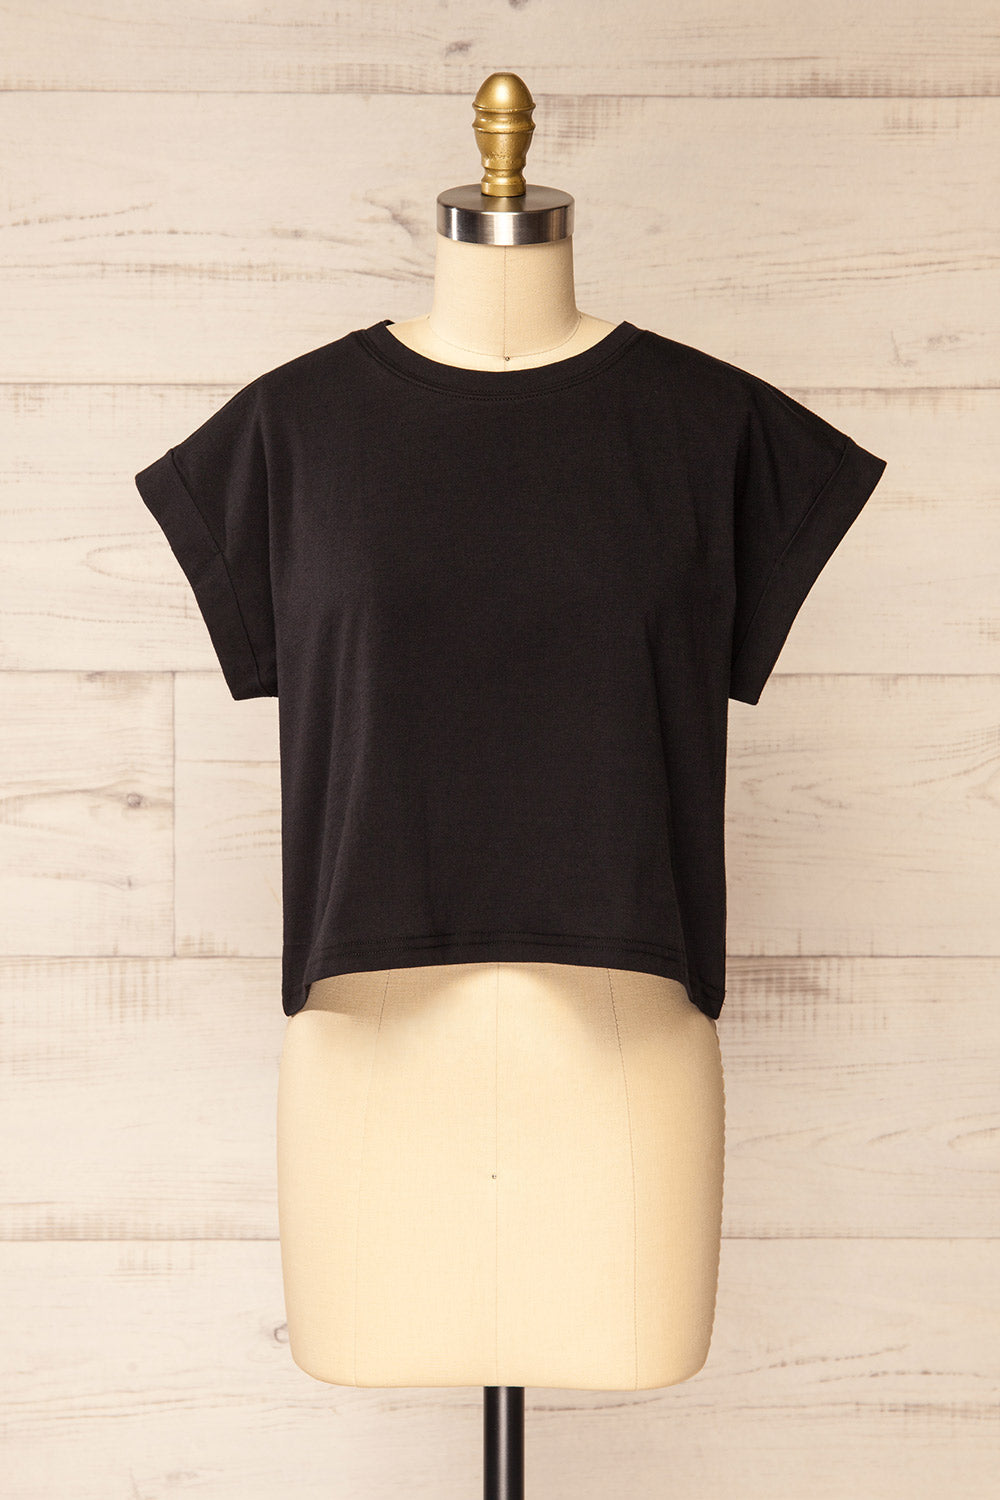 Cheddington Black Cropped T-Shirt | La petite garçonne front view